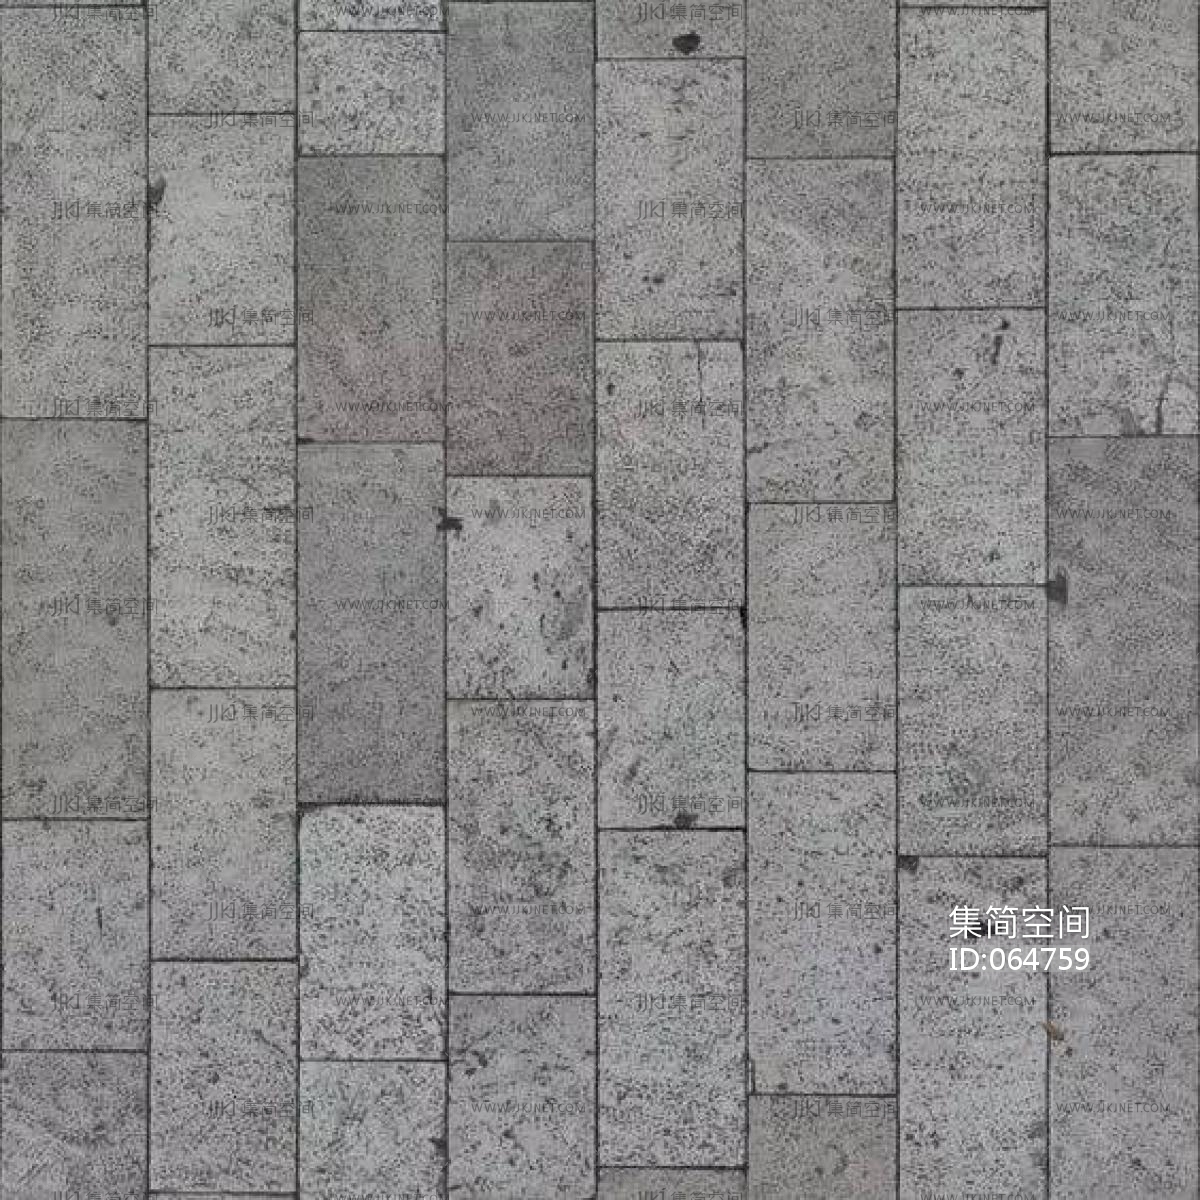 室外户外地铺广场园林步道砖地面地铺灰麻白麻花岗岩 (2)材质贴图下载-【集简空间】「每日更新」